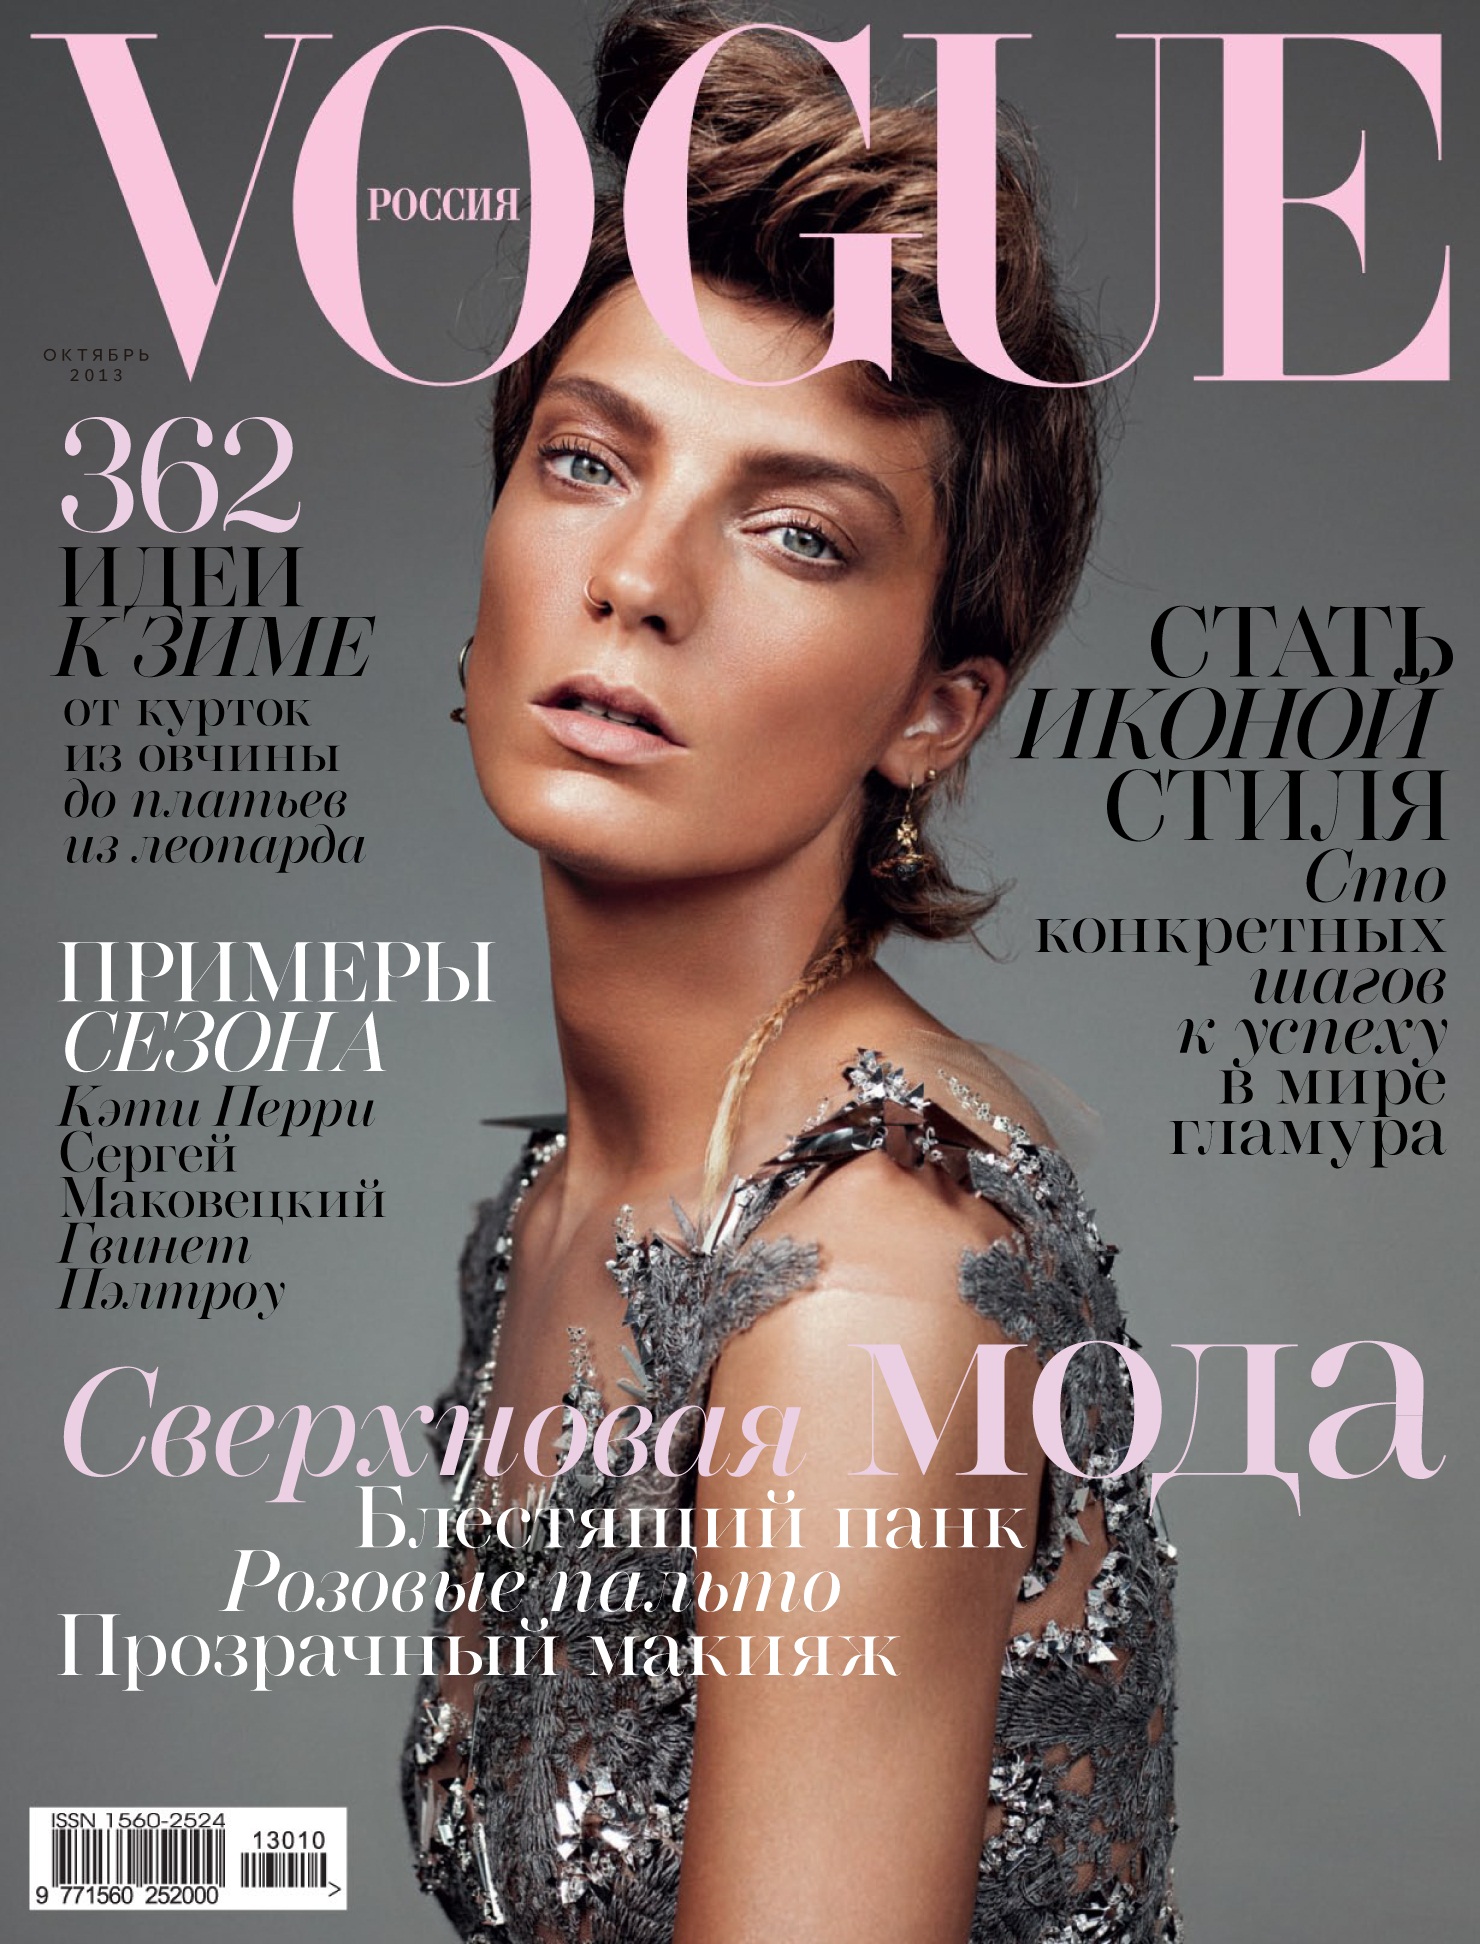 Журнал вог сайт. Обложки журнал Вог Росси. Последняя обложка Вог. Обложки Vogue Russia 1998.